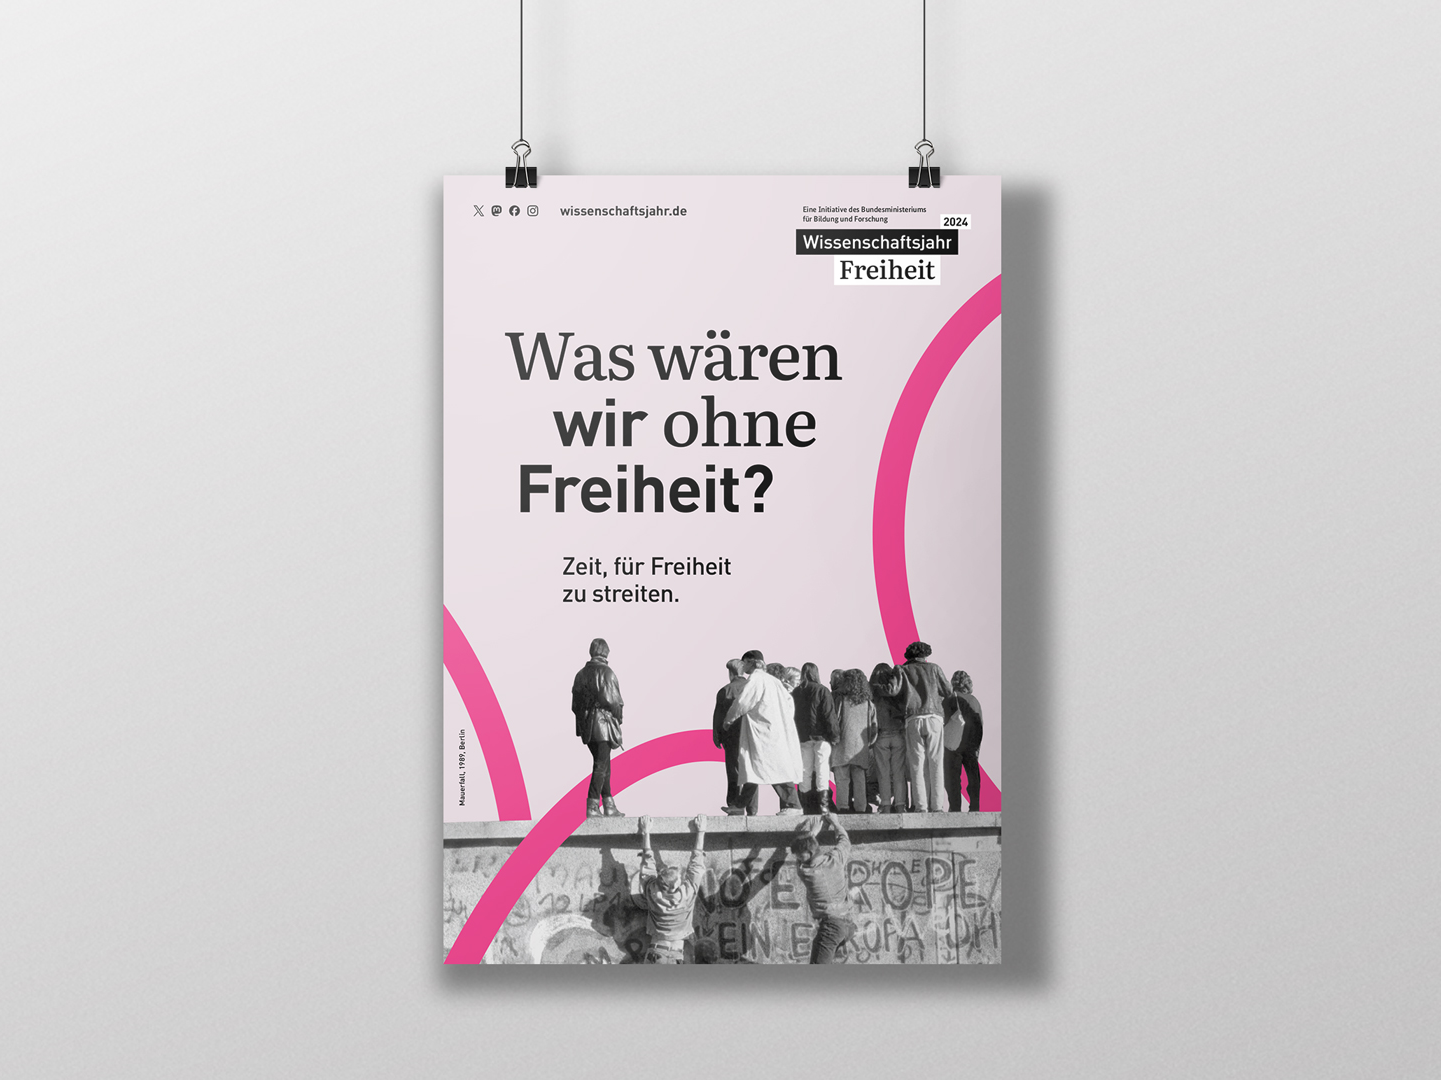 Das Plakat "Was wären wir ohne Freiheit?" im Wissenschaftsjahr 2024 — Freiheit.